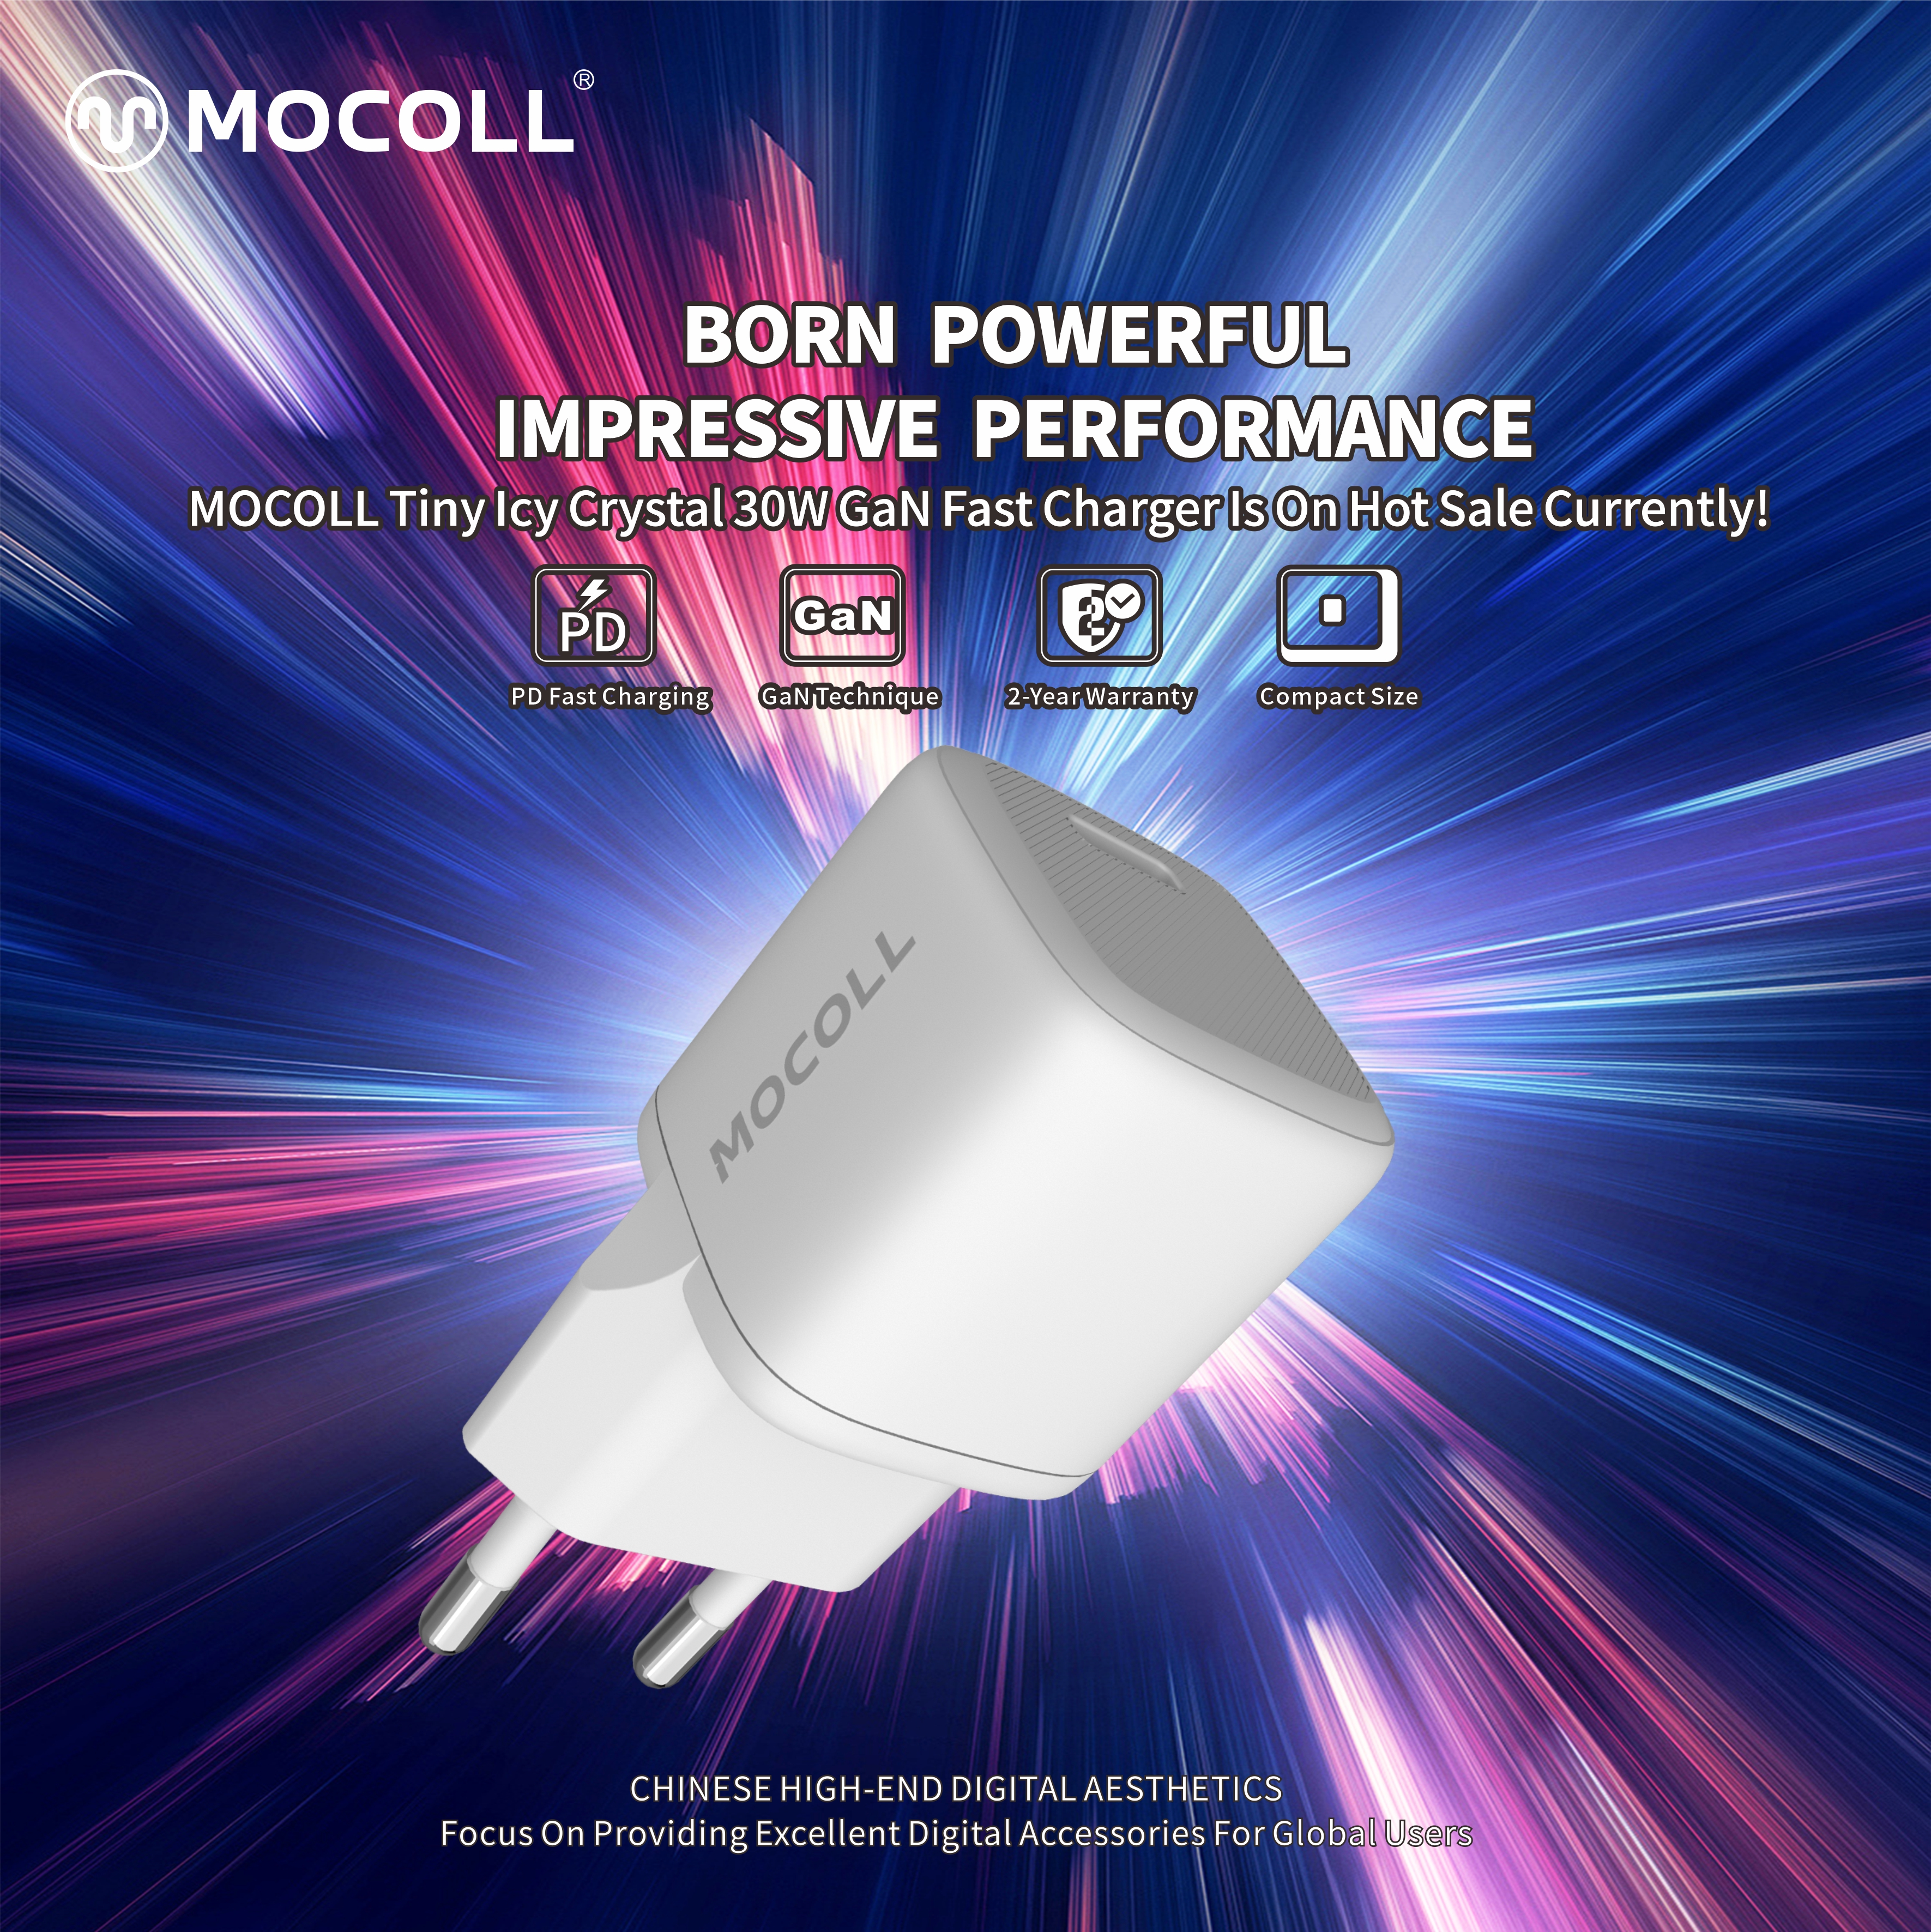 Urodzony Potężny | Premiera nowych produktów MOCOLL!